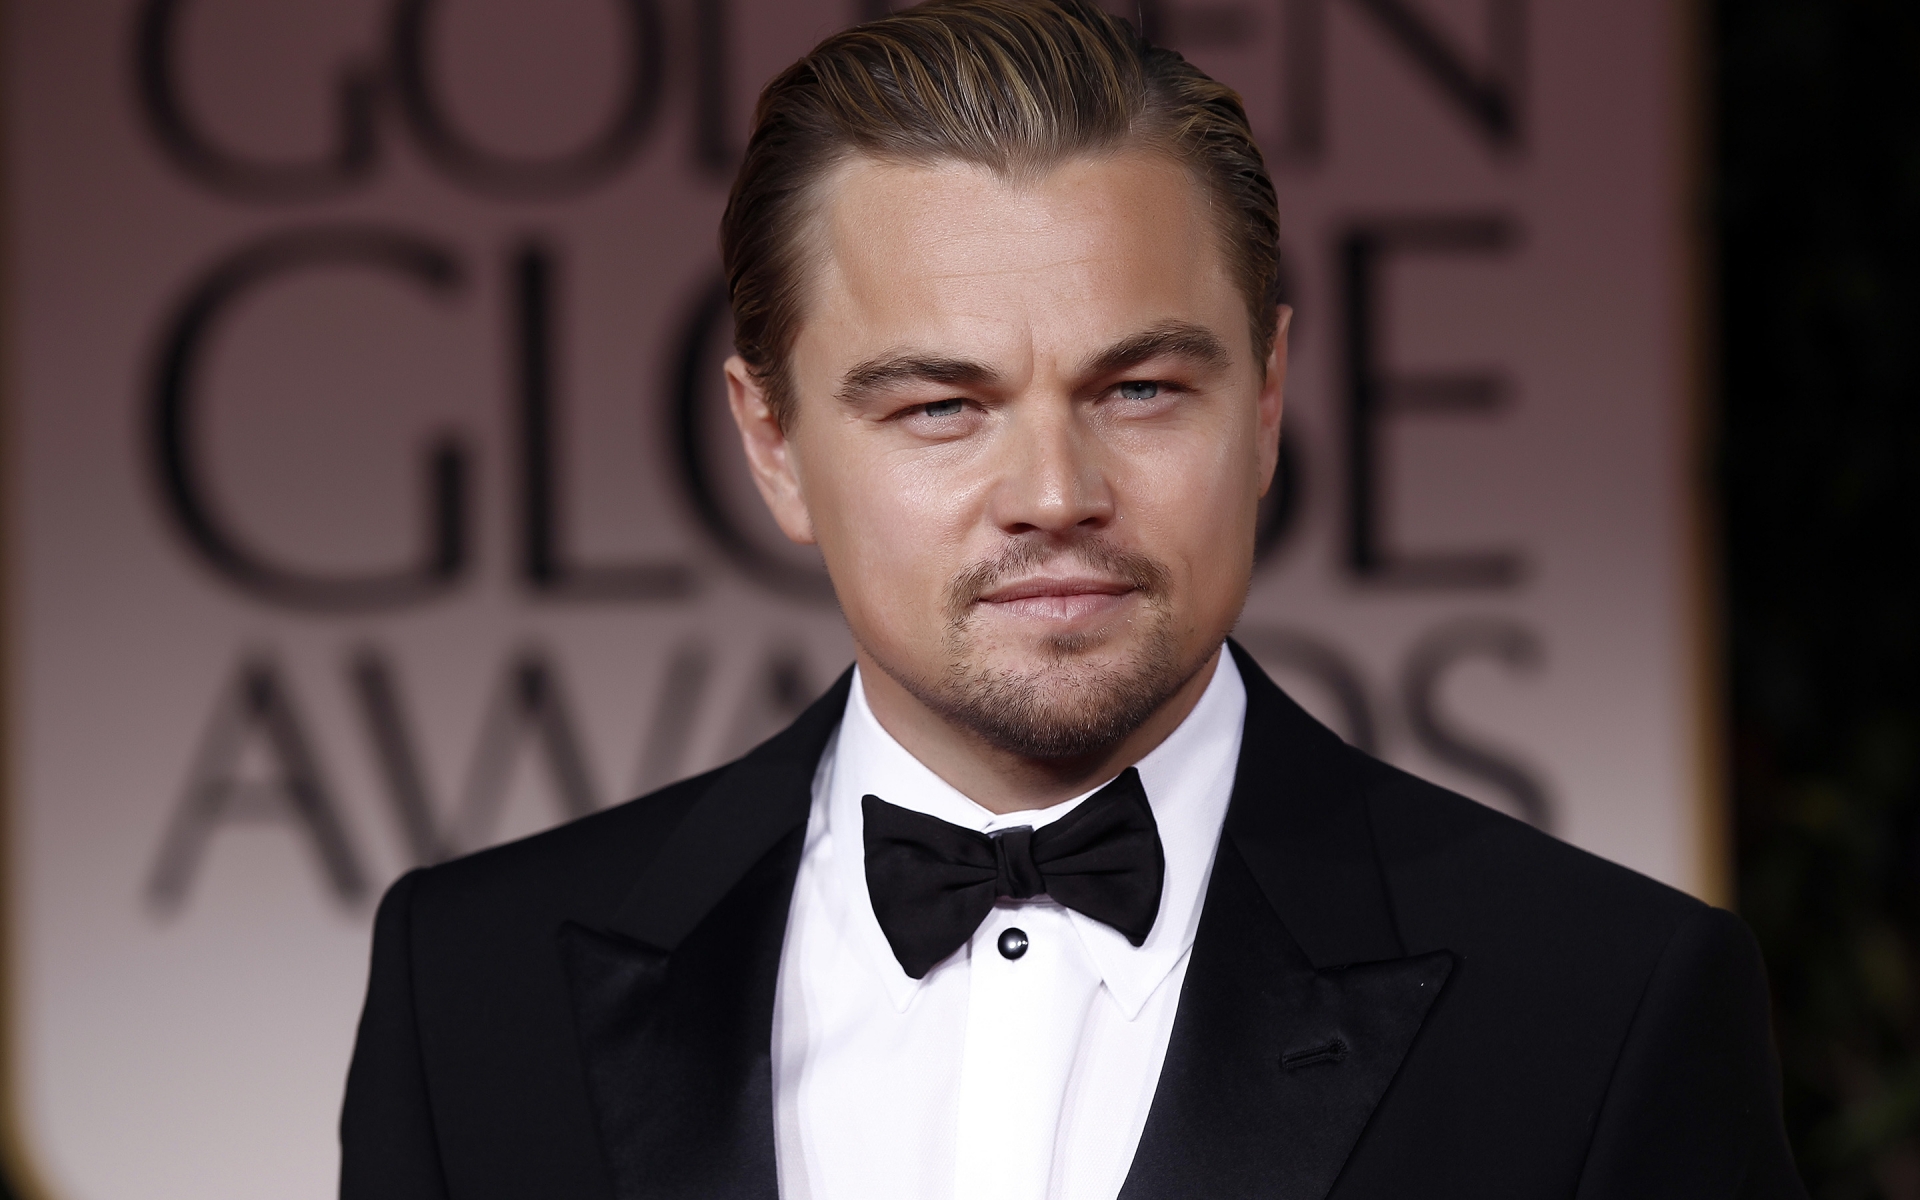 Leonardo DiCaprio in Tuxedo for 1920 x 1200 widescreen resolution